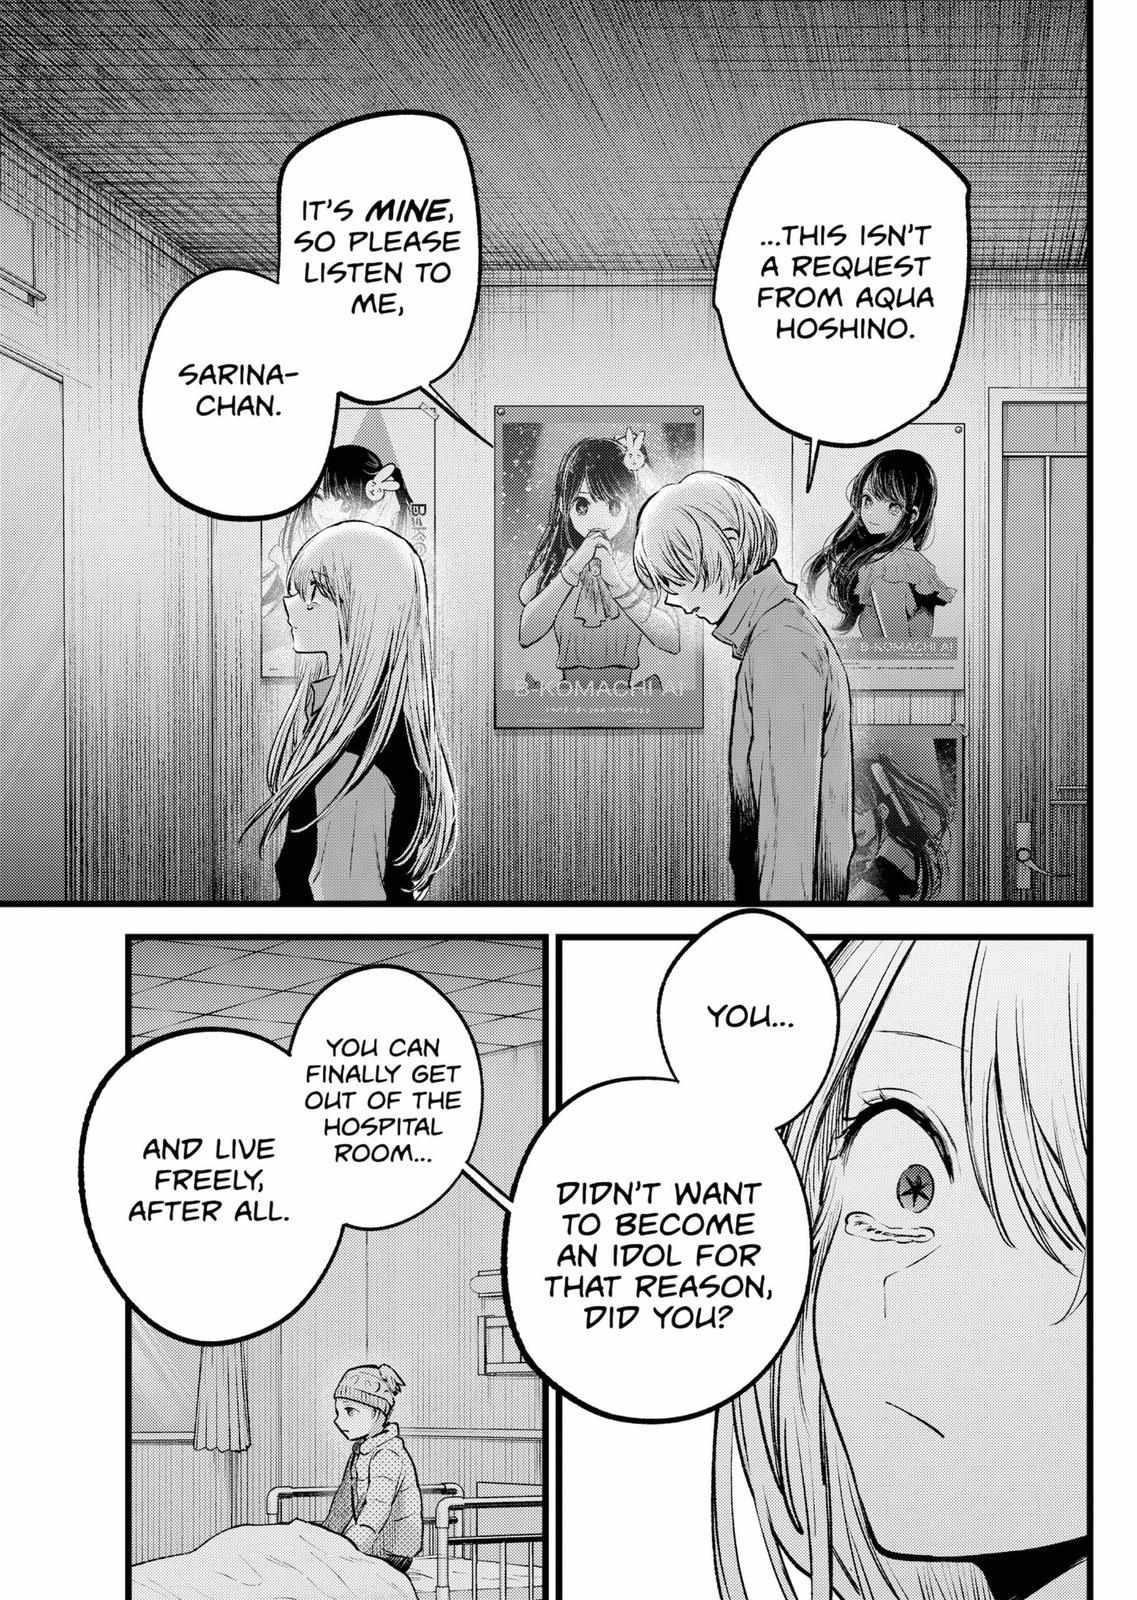 Oshi no ko, Chapter 122 - Oshi no ko Manga Online